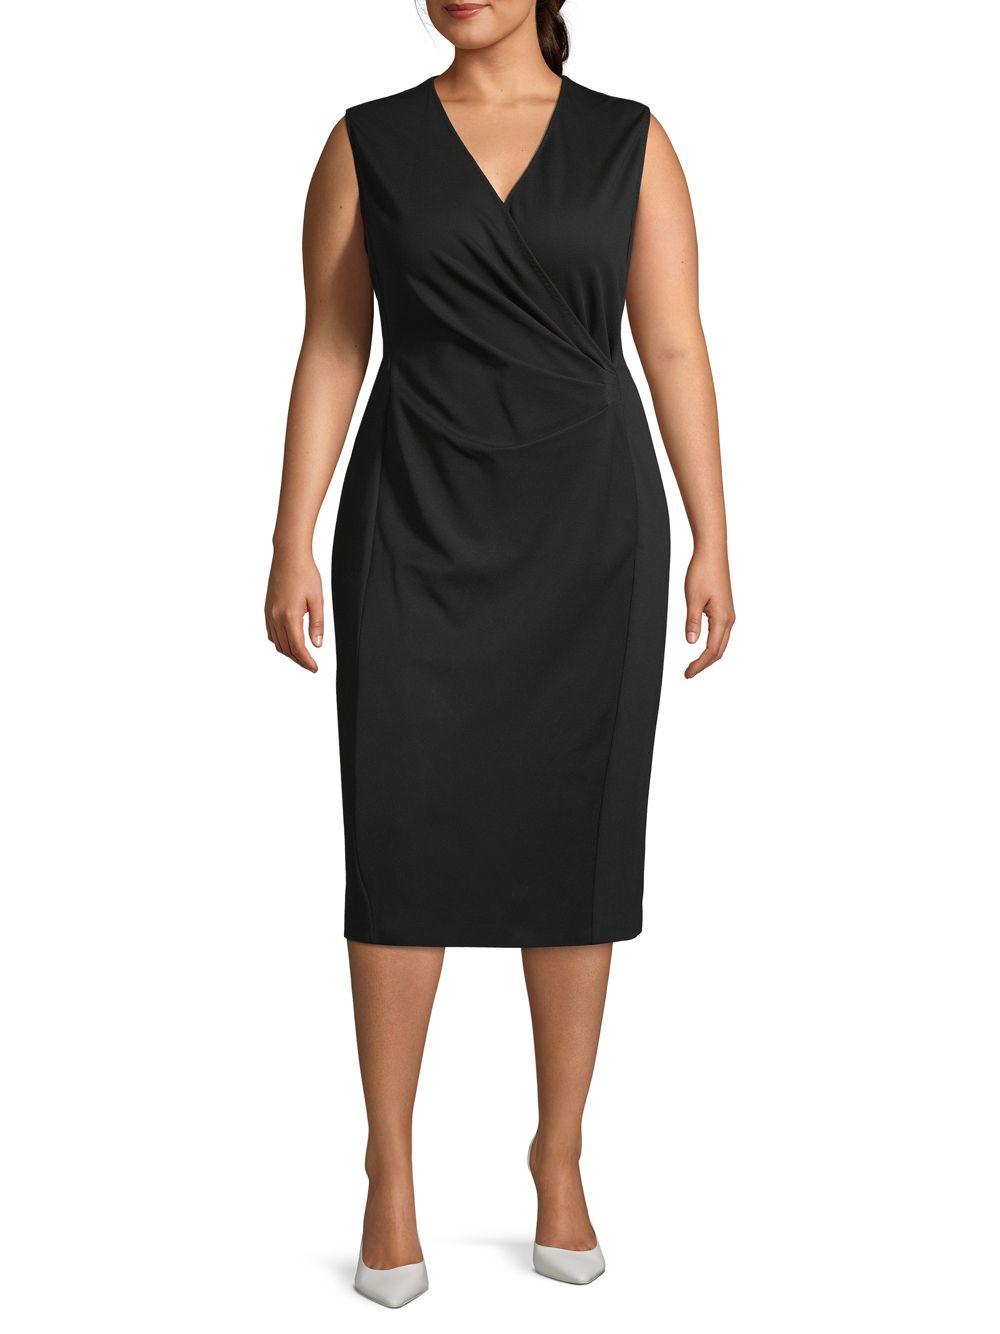 Marina Rinaldi Synthetic Sleeveless Knee-length Dress in Black - Lyst